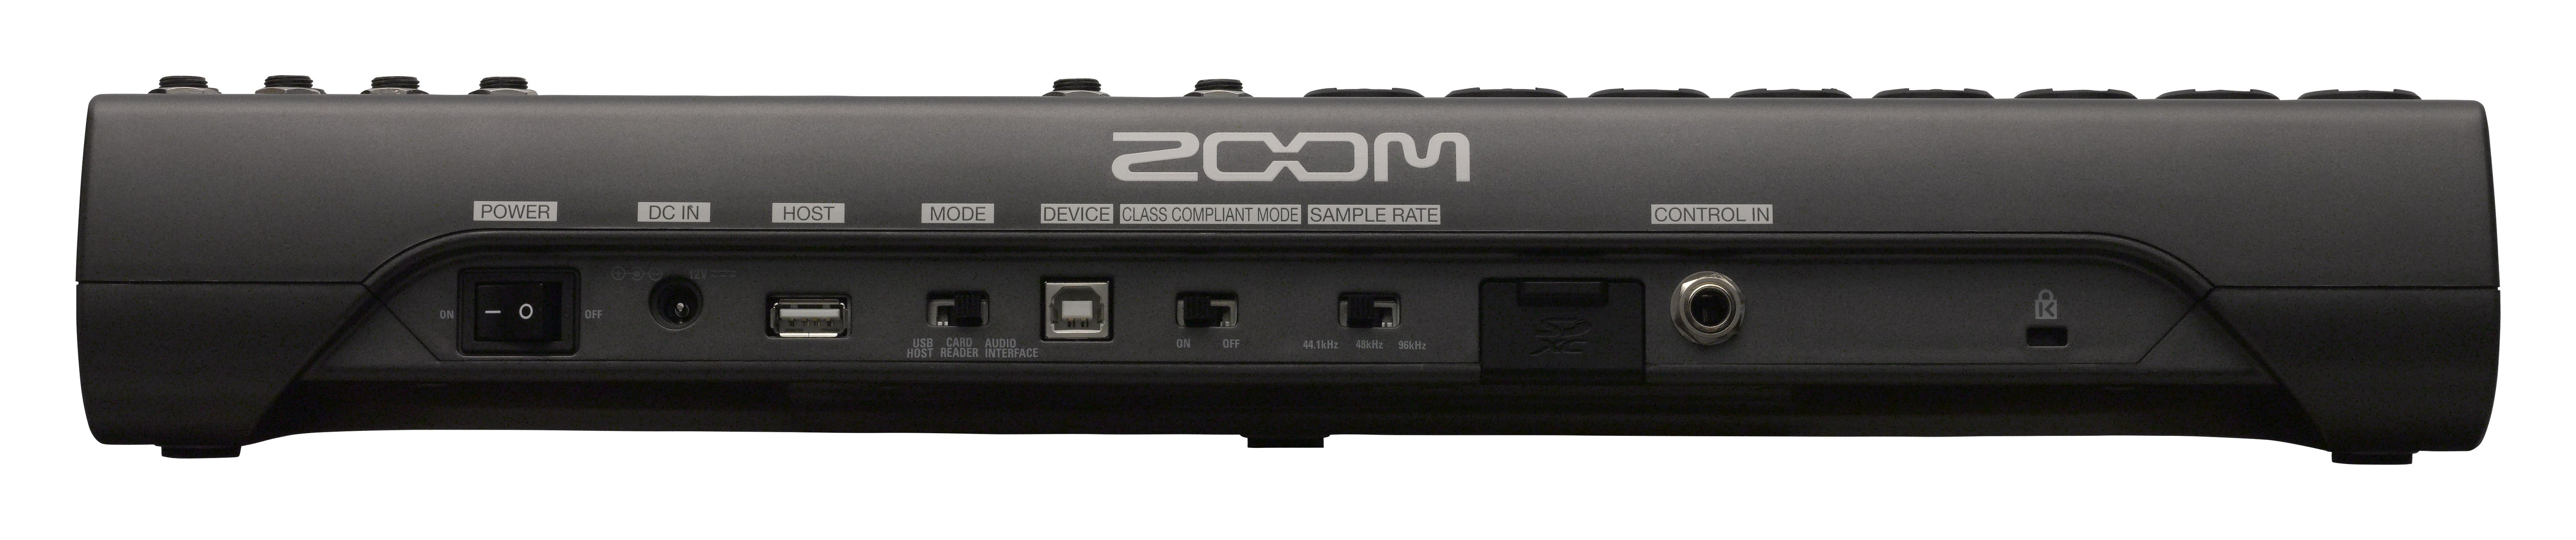 Zoom LiveTrak L-12 Digital Mixer + Recorder